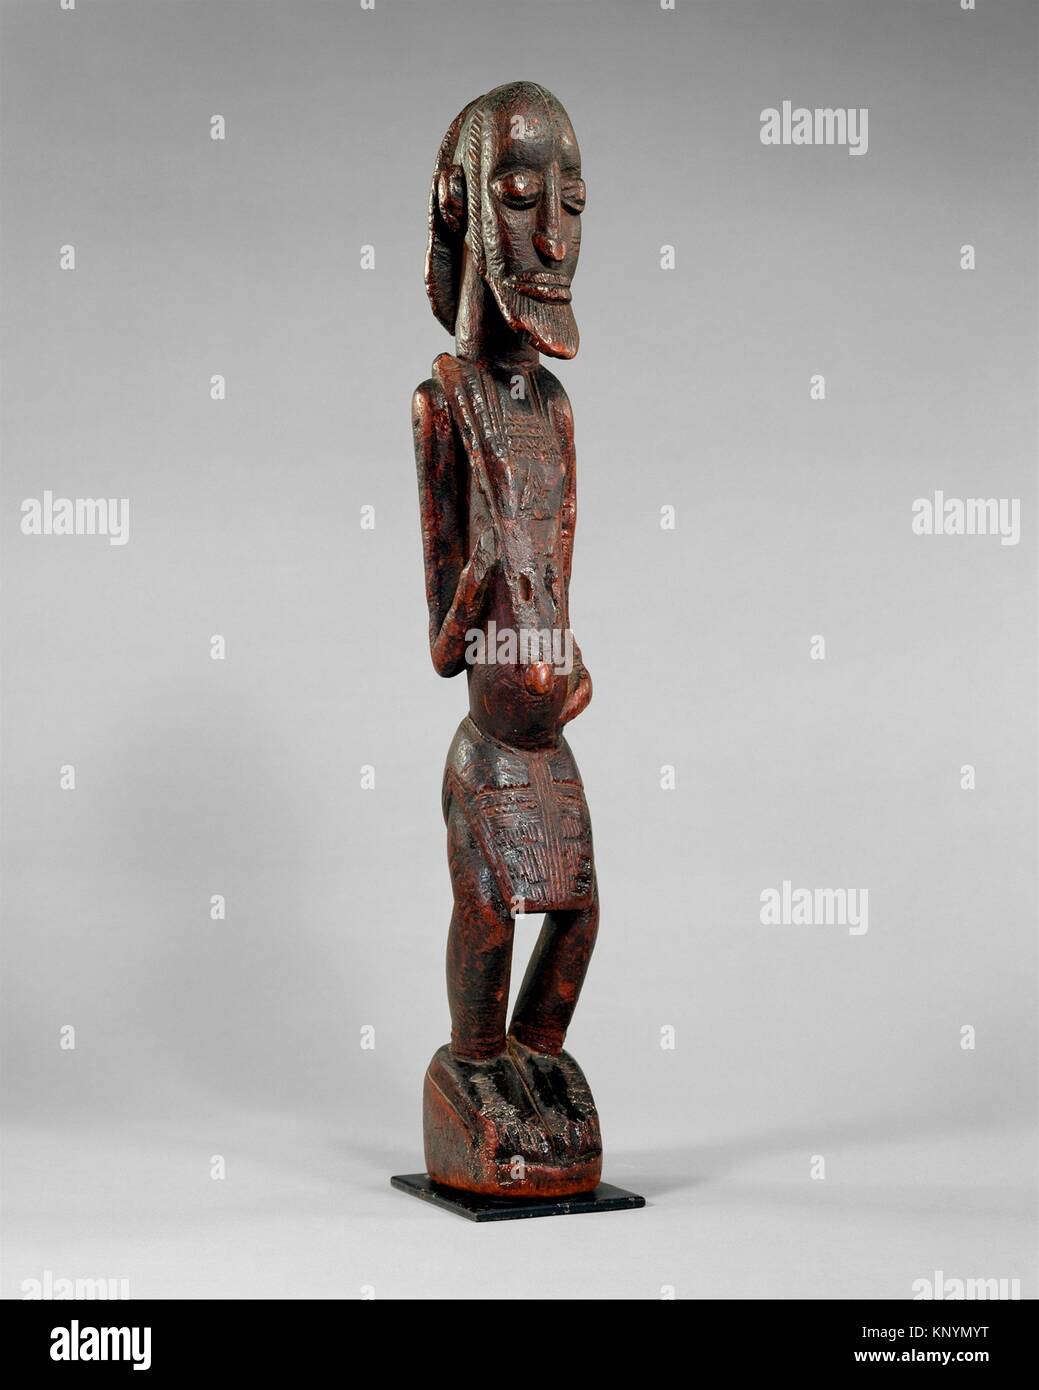 humana abstracta de madera fotografías imágenes alta resolución - Alamy